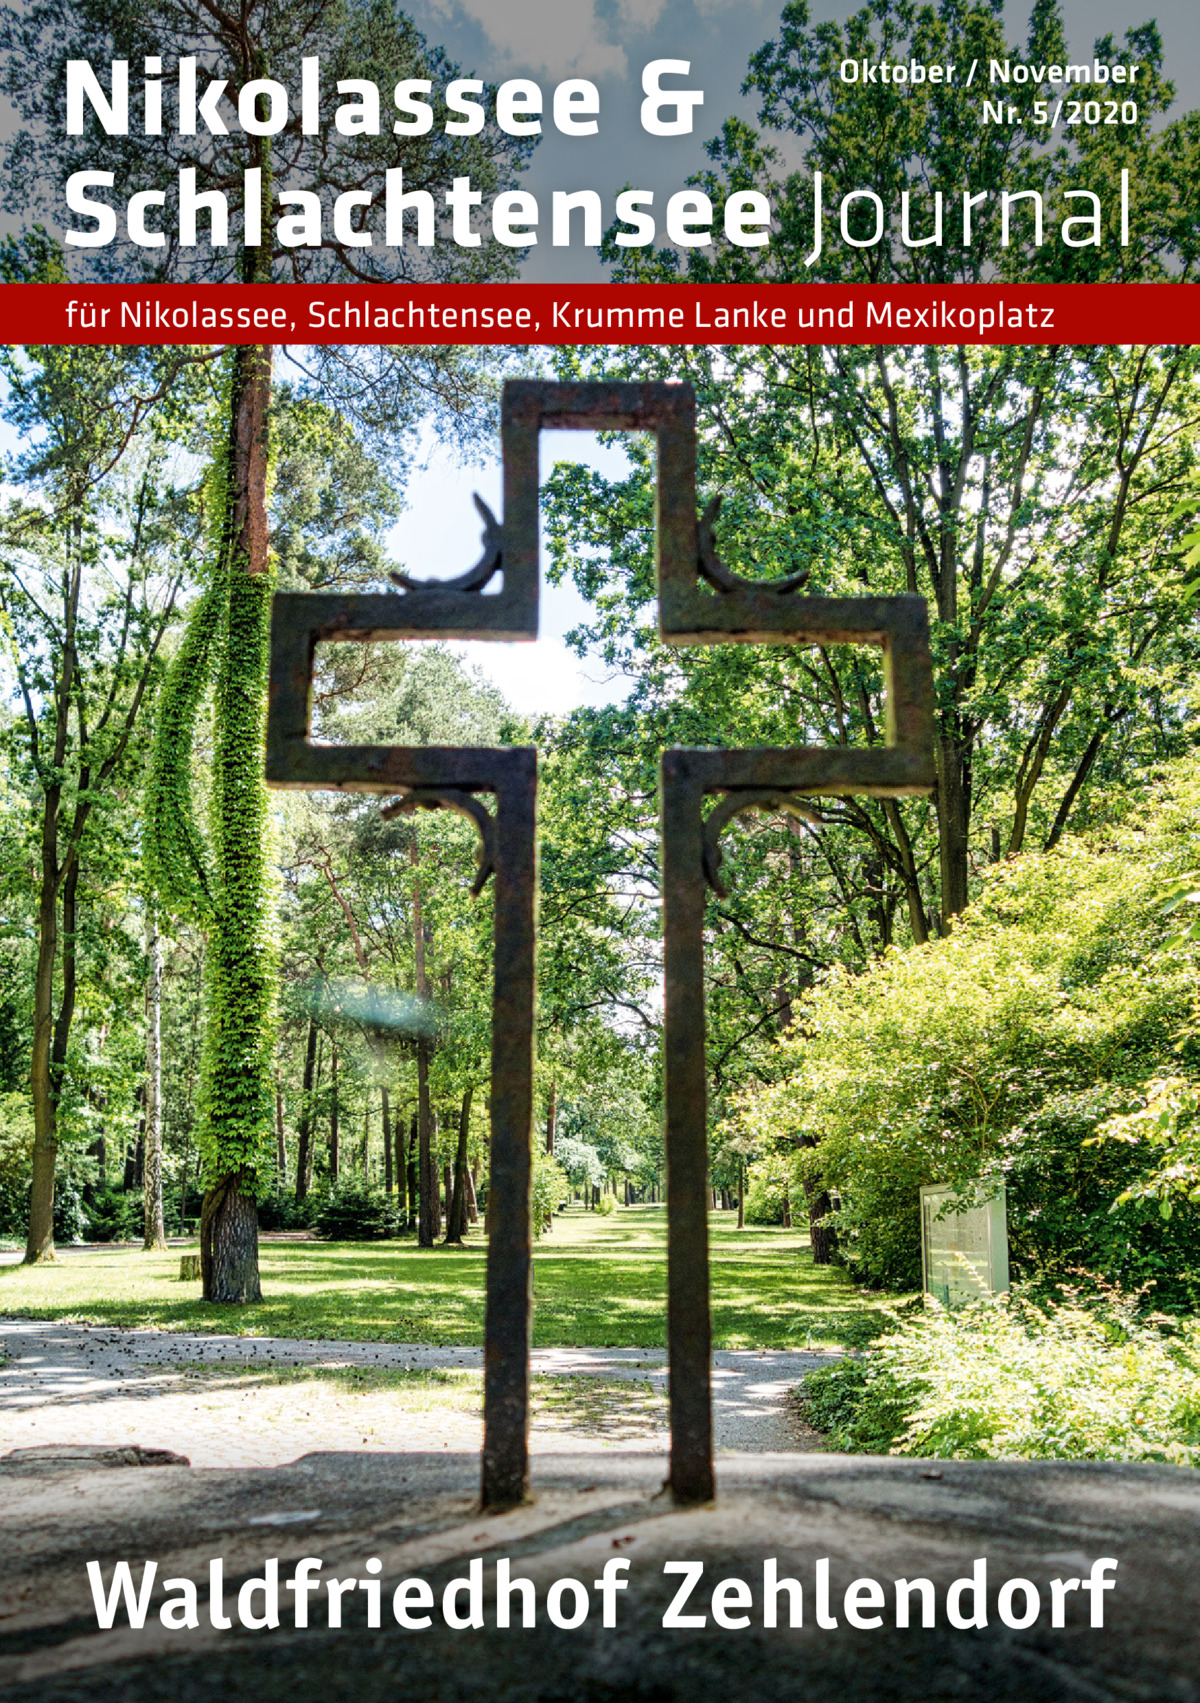 Nikolassee & Schlachtensee Journal  Oktober / November Nr. 5/2020  für Nikolassee, Schlachtensee, Krumme Lanke und Mexikoplatz  Waldfriedhof Zehlendorf